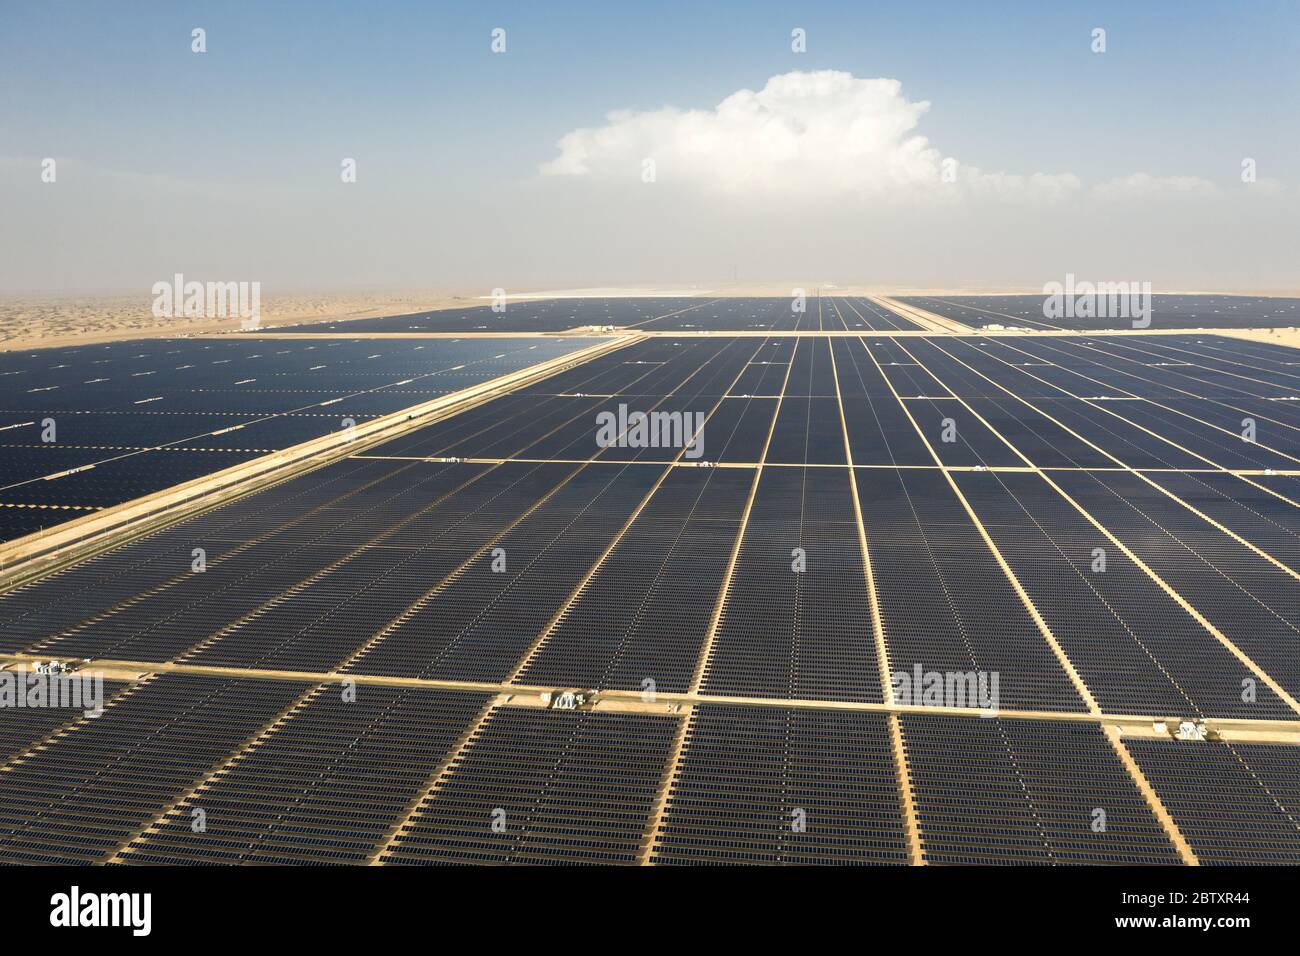 Vue aérienne d'un paysage avec une ferme de panneaux solaires photovoltaïques produisant une énergie renouvelable durable dans une centrale électrique désertique. Banque D'Images